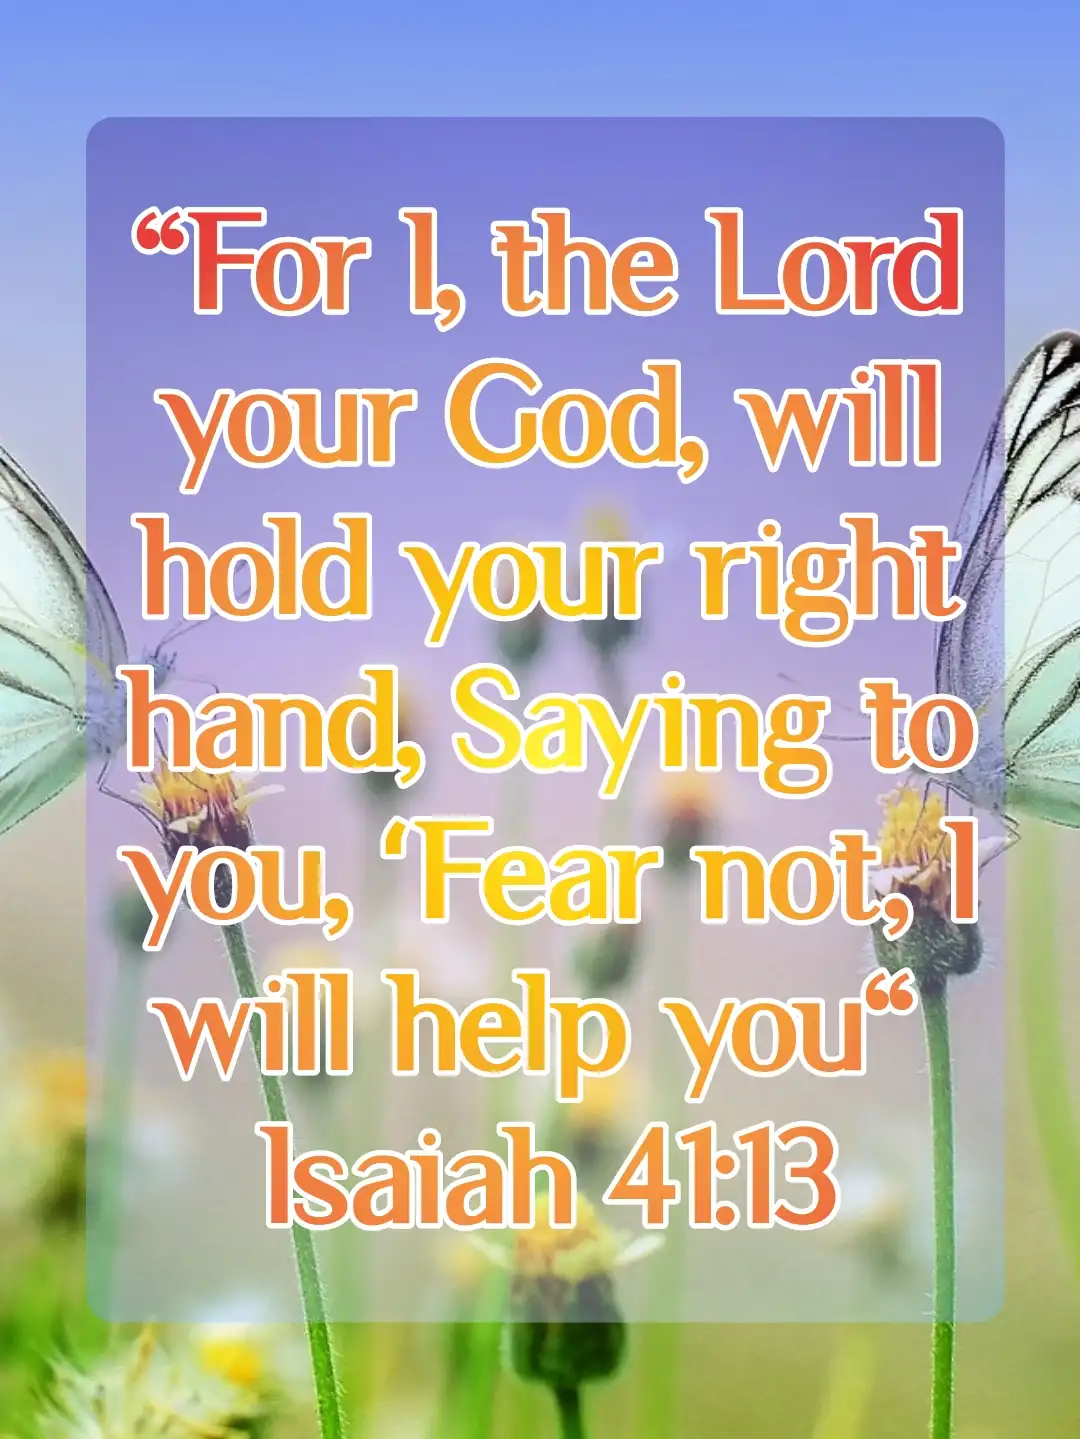 today bible verse (Isaiah 41:13 )